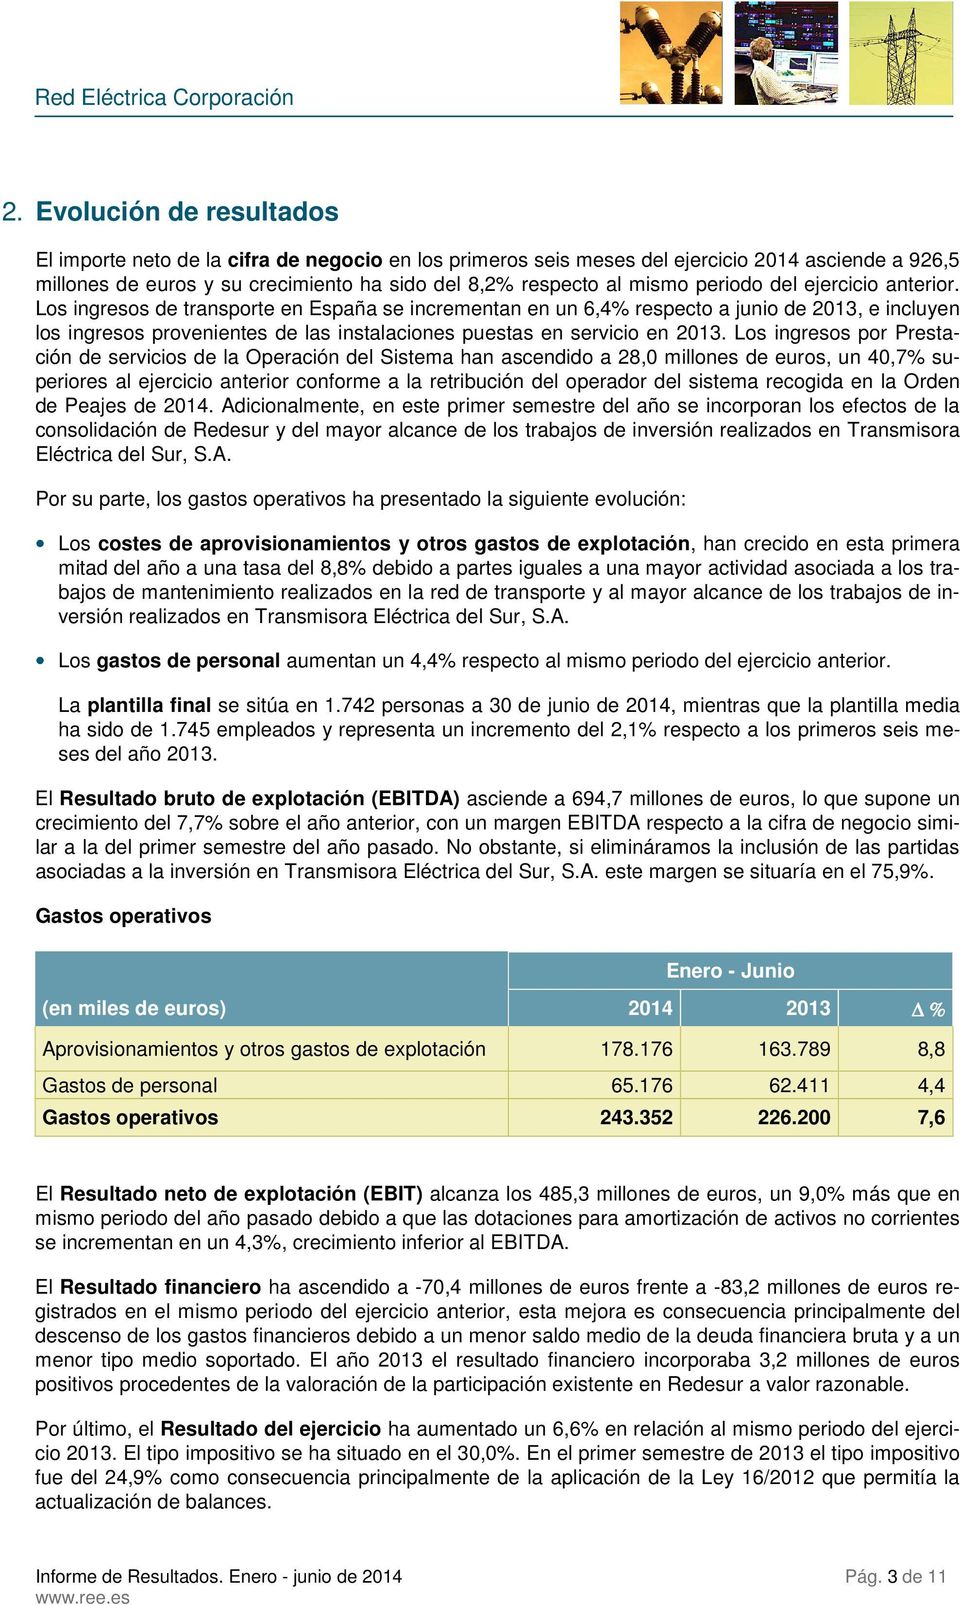 Los ingresos de transporte en España se incrementan en un 6,4% respecto a junio de 2013, e incluyen los ingresos provenientes de las instalaciones puestas en servicio en 2013.